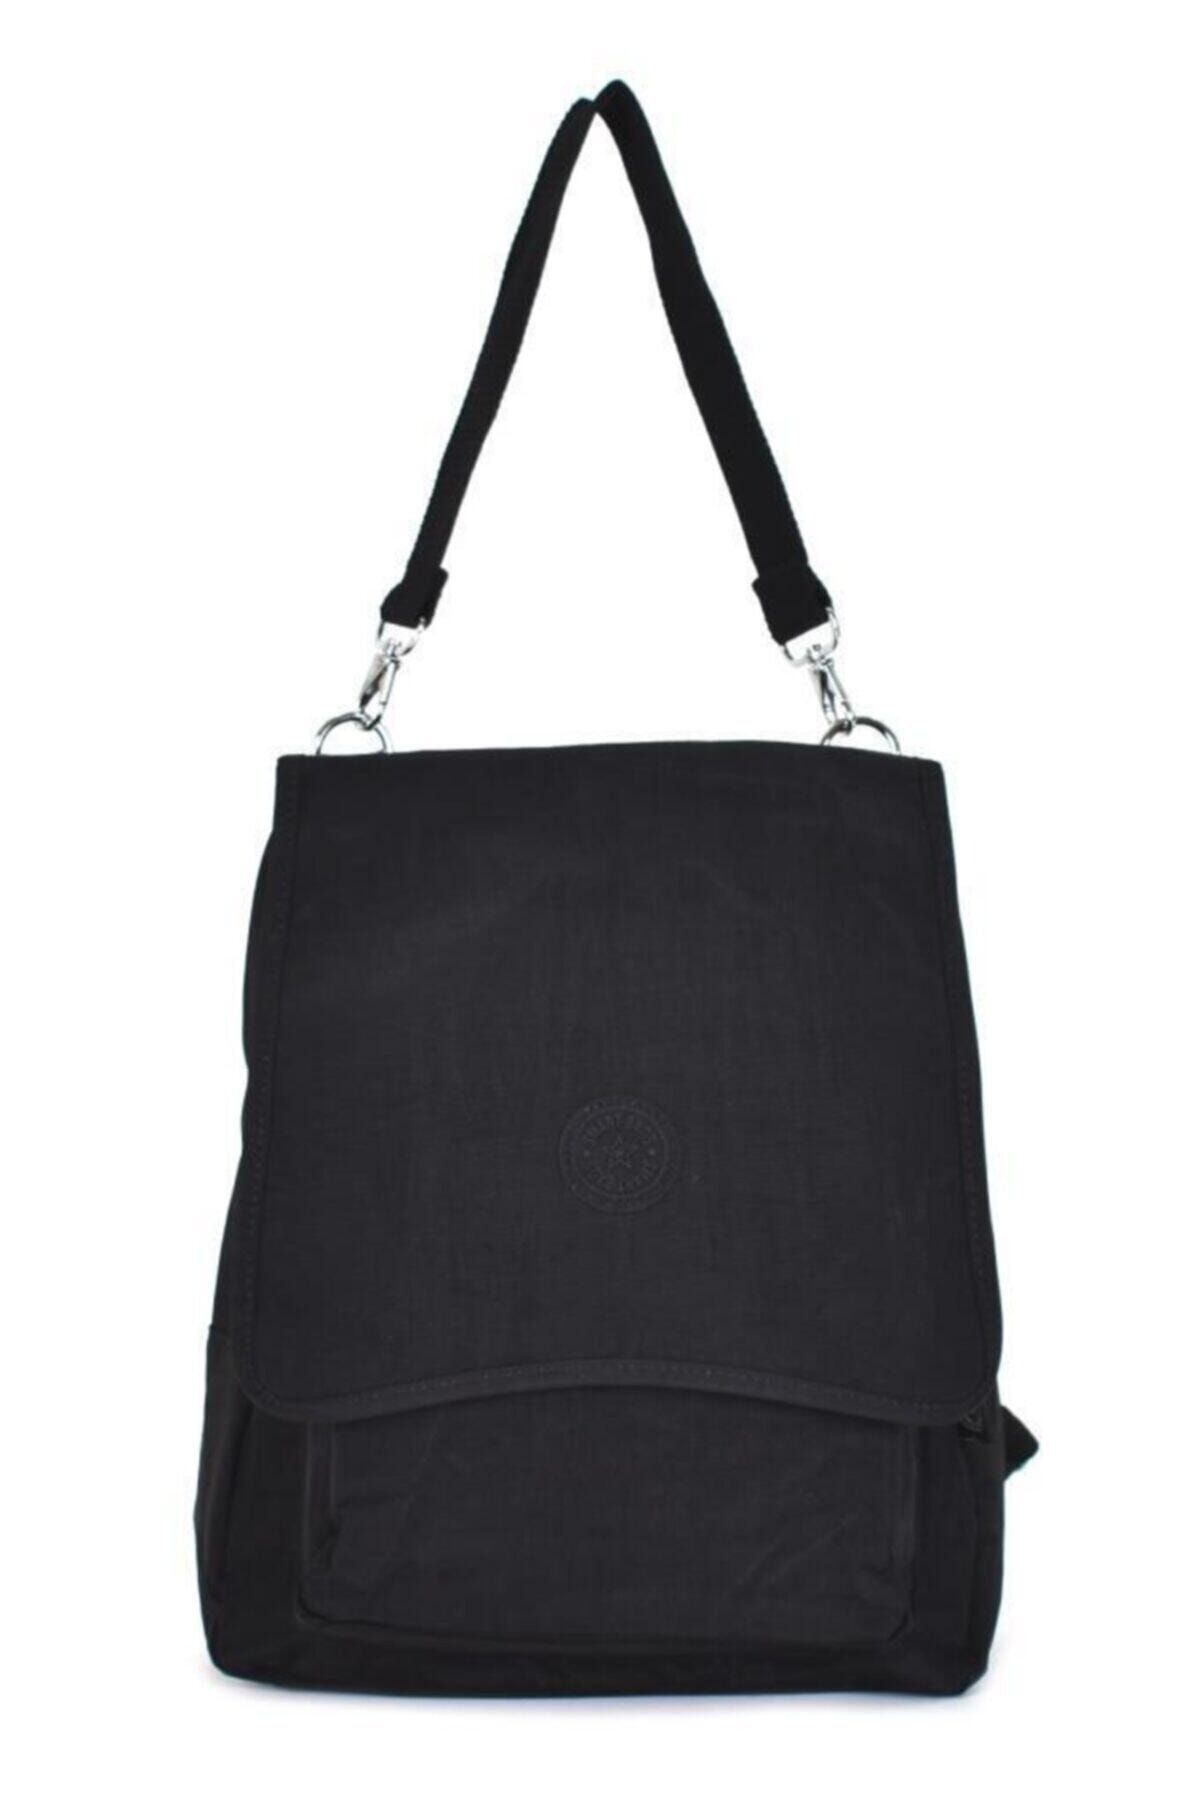 Smart Bags Smb1119 Siyah-0001 Kadın Kol Ve Sırt Çantası